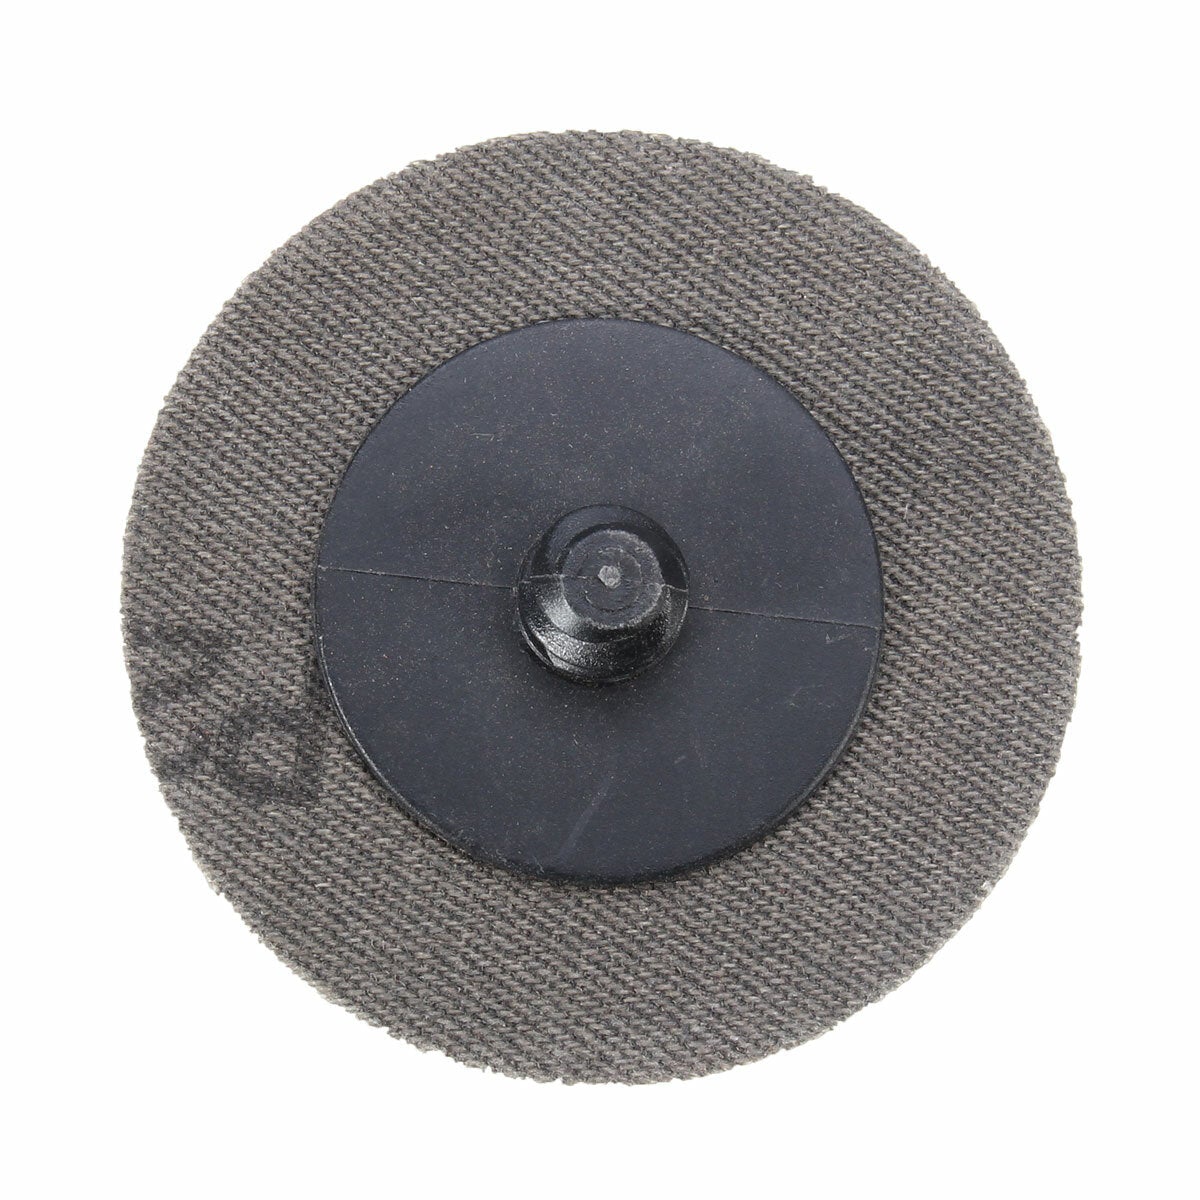 40pcs 2 Inch Roll Lock Sanding Disc 24/60/120/240 Grit Sandpaper Sanding Disc